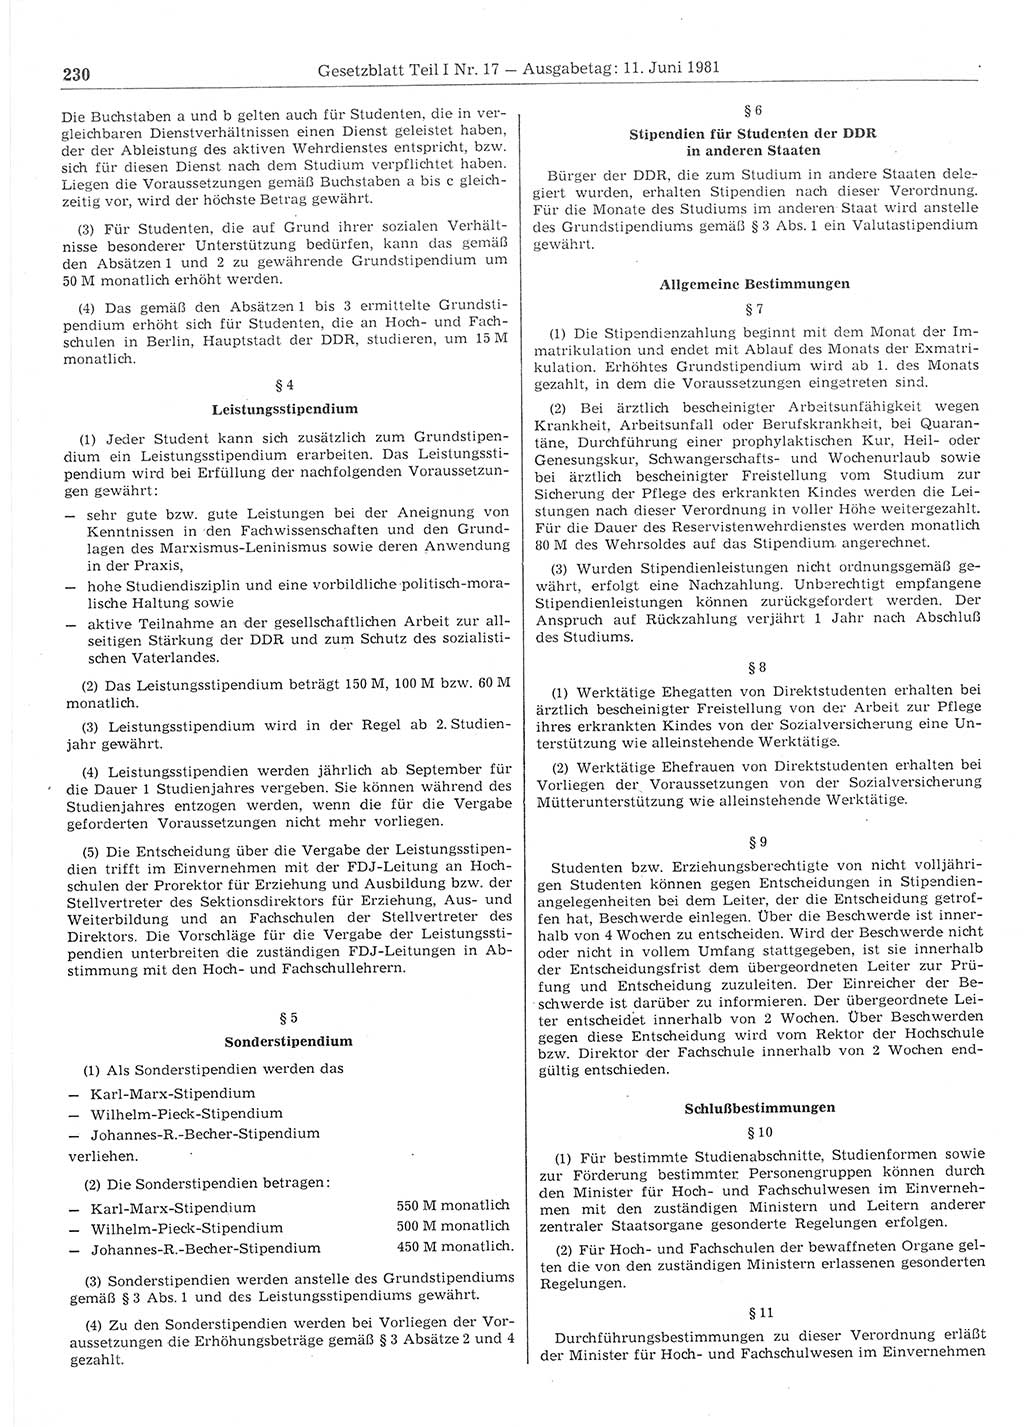 Gesetzblatt (GBl.) der Deutschen Demokratischen Republik (DDR) Teil Ⅰ 1981, Seite 230 (GBl. DDR Ⅰ 1981, S. 230)